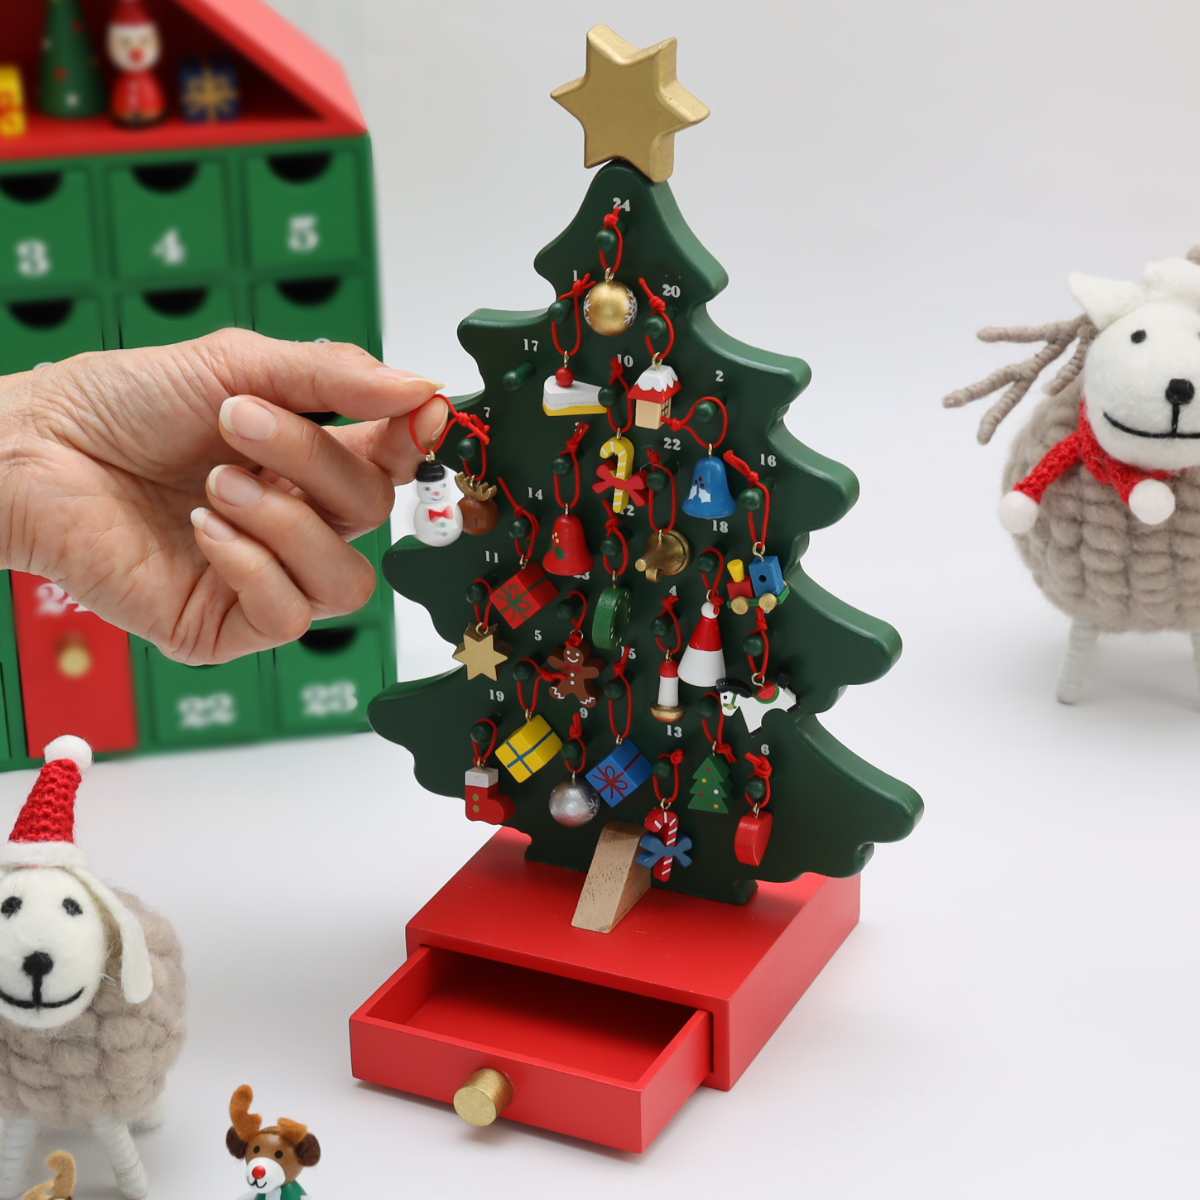 楽天市場 アドベントツリー クリスマスツリー型アドベントカレンダー サンタクロース サンタ トナカイ スノーマン 北欧 引き出し ギフト 贈り物 おもちゃ 玩具 木製 Xmas Cristmas Holiday ナチュラル 置物 動物 ウルトラミックス